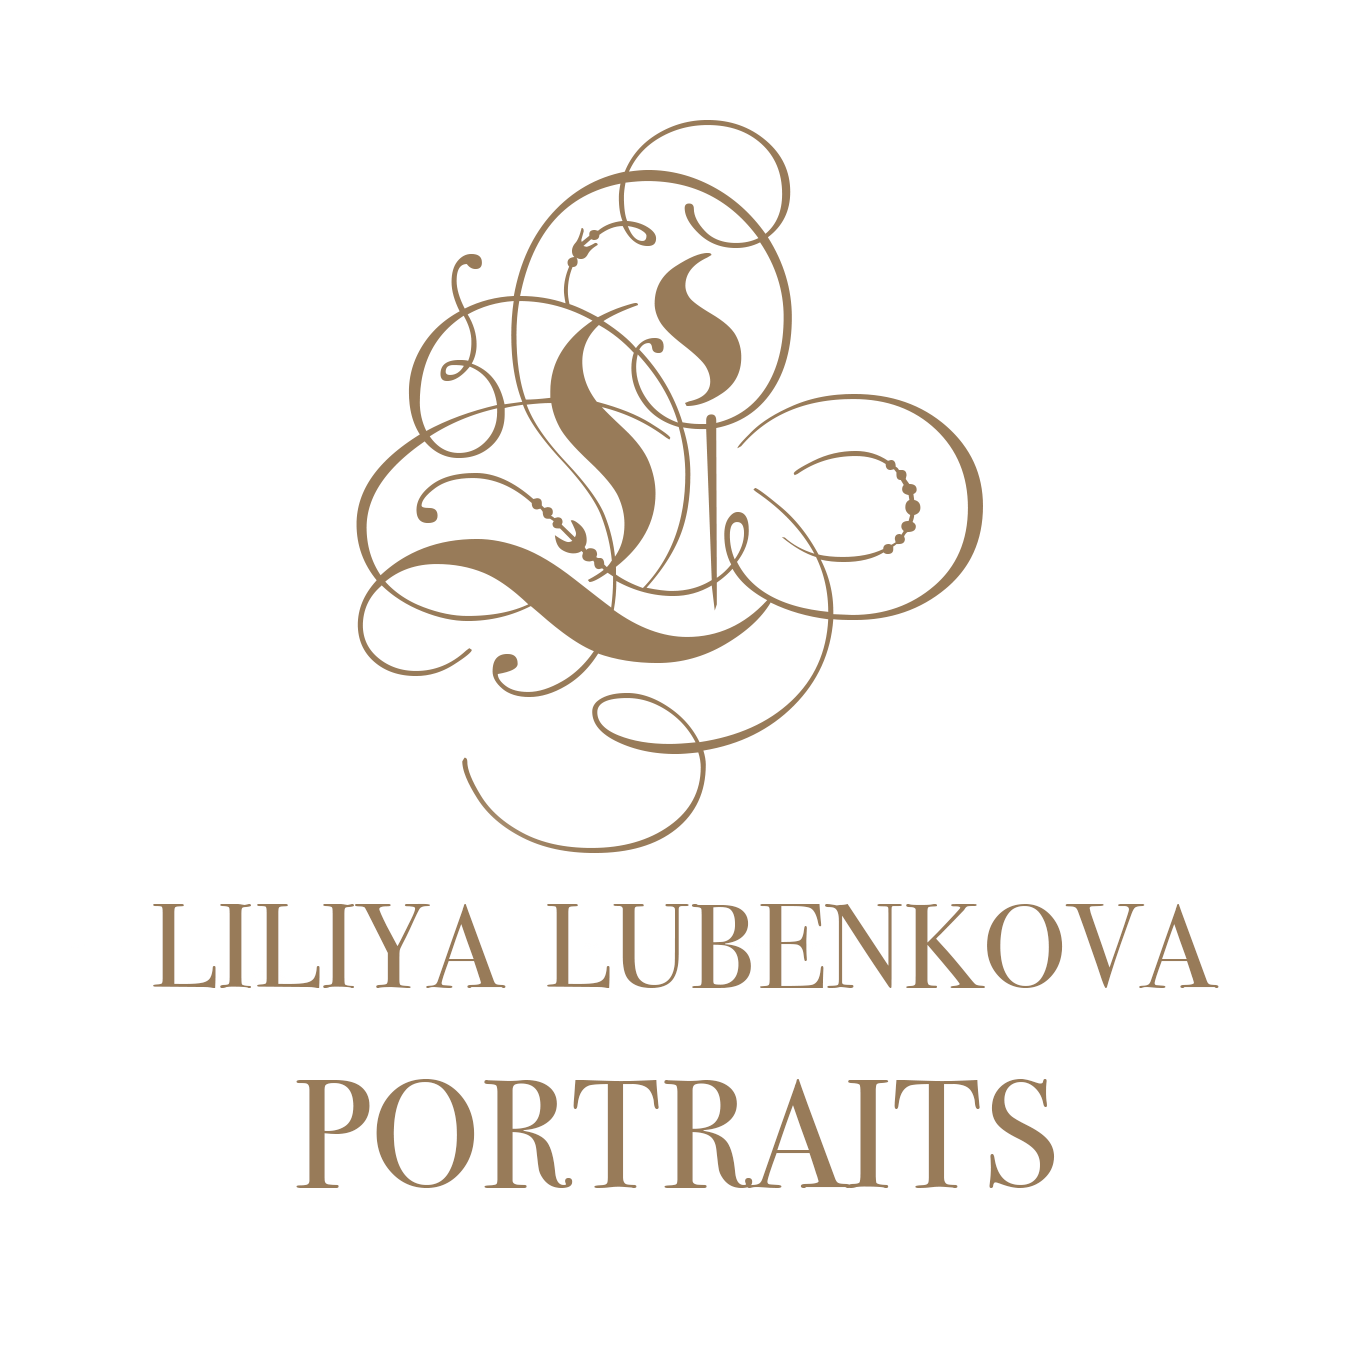 Liliya Lubenkova Portraits 